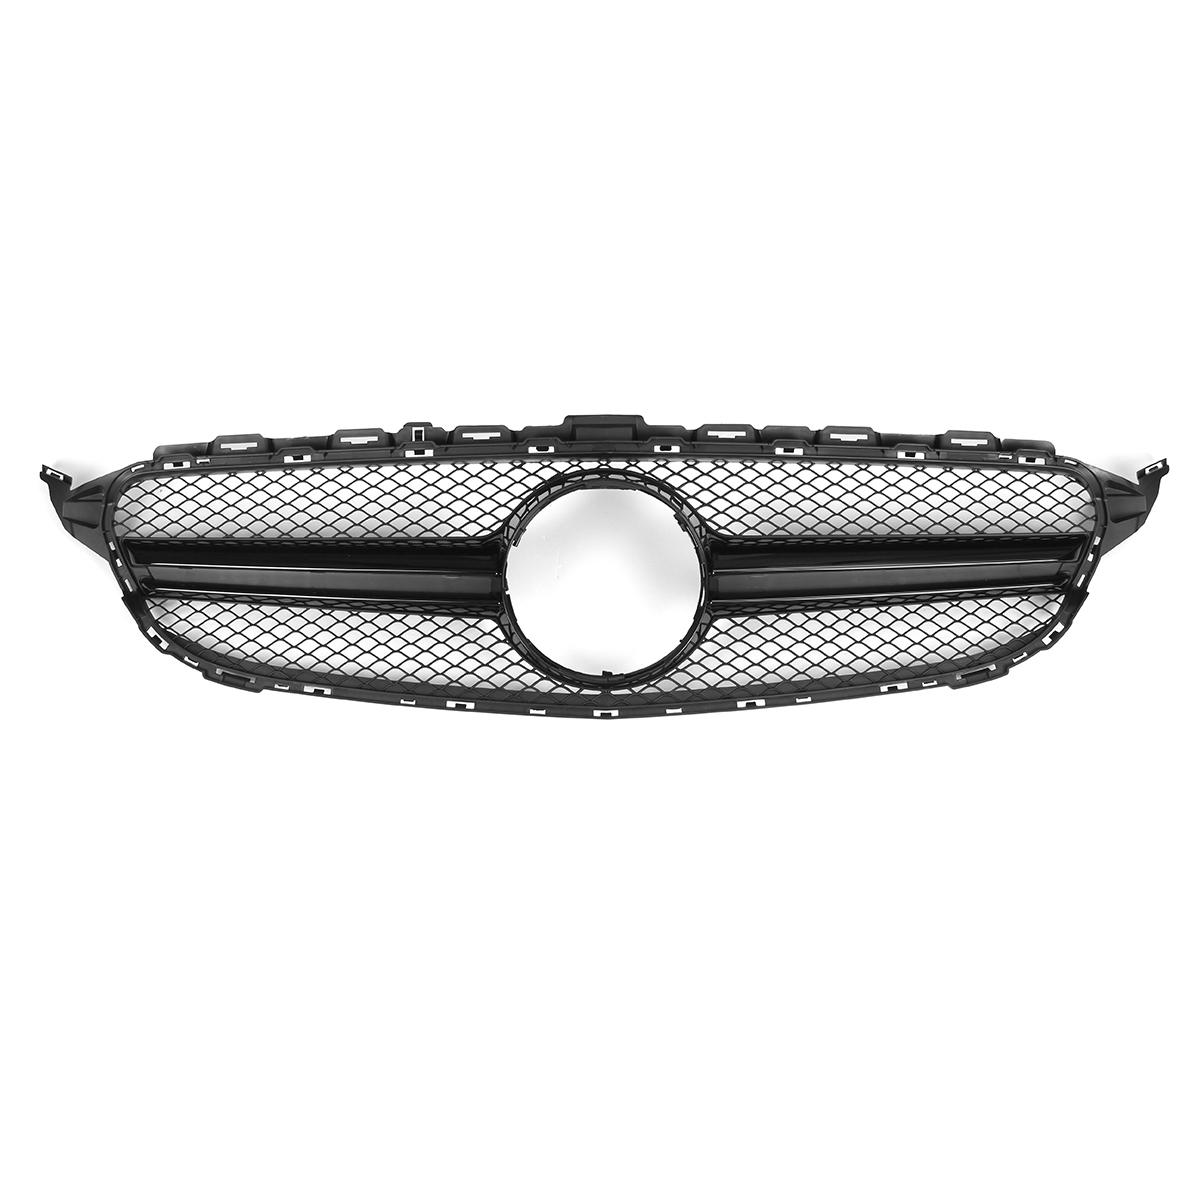 Glanzende zwarte voorbumper Mesh grille Grill voor Mercedes C-klasse W205 15-18